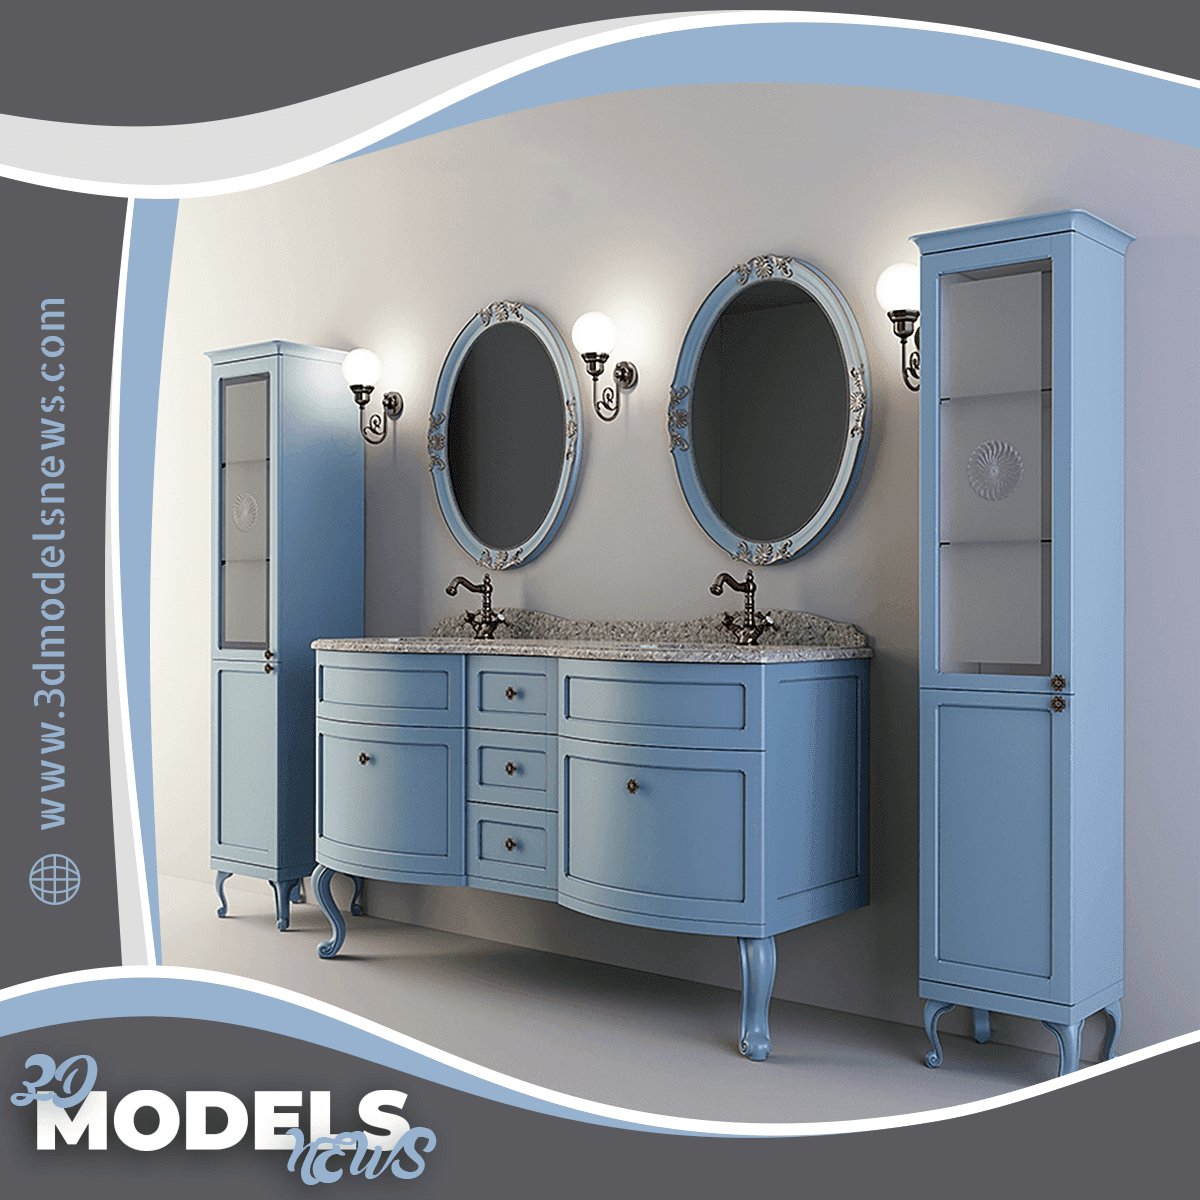 Bathroom Furniture Caprigo Imperio Model